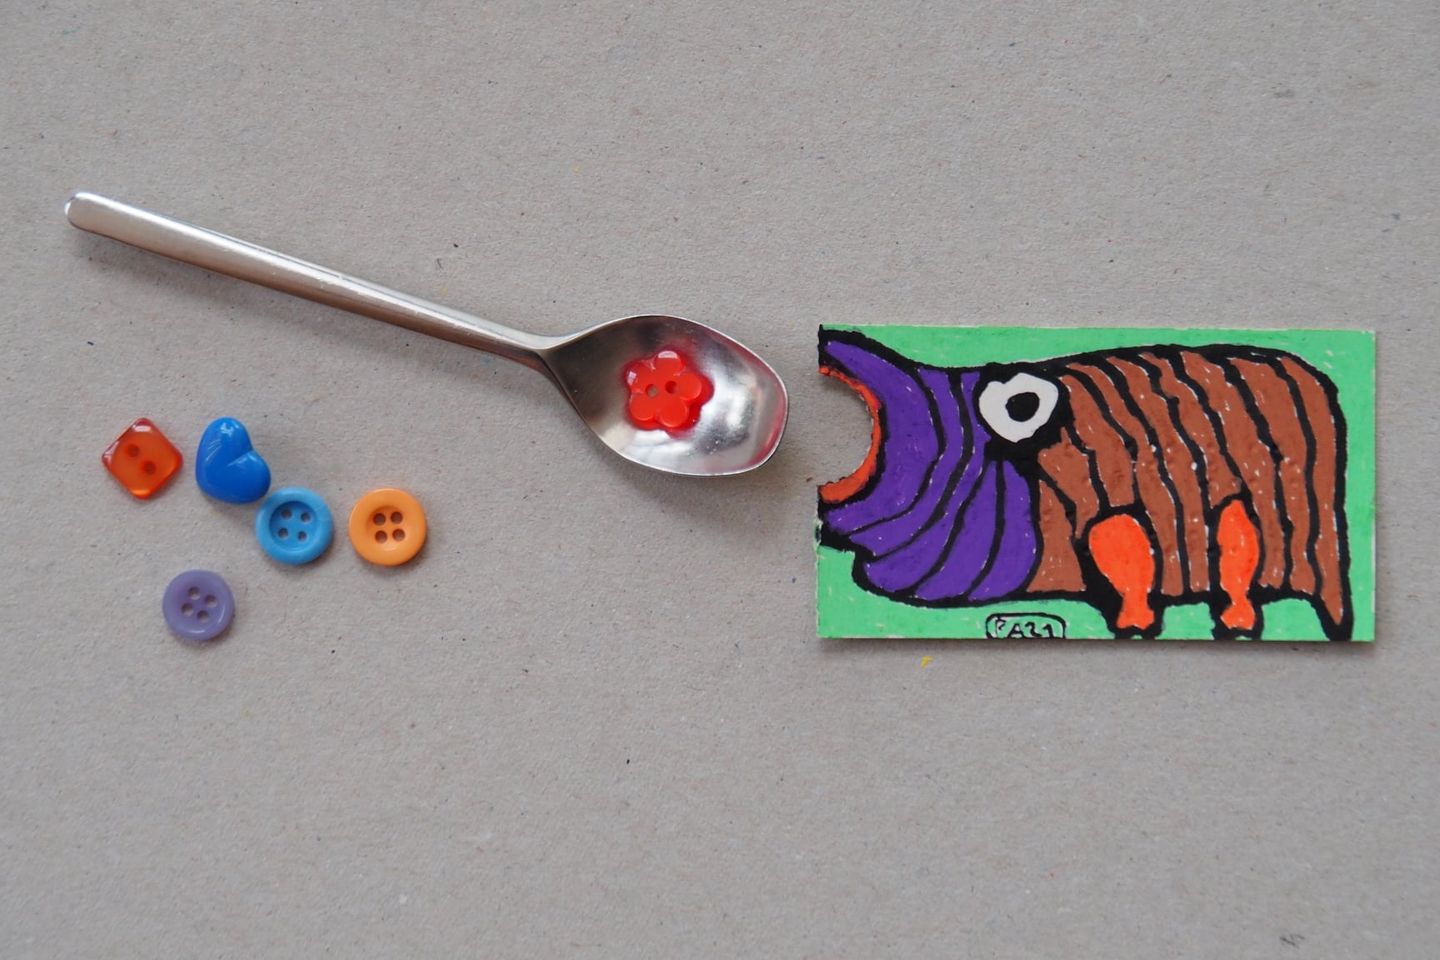 montage humoristique : dessin d'hippopotame gueule ouverte devant une petite cuillère contenant des perles de couleur en plastique